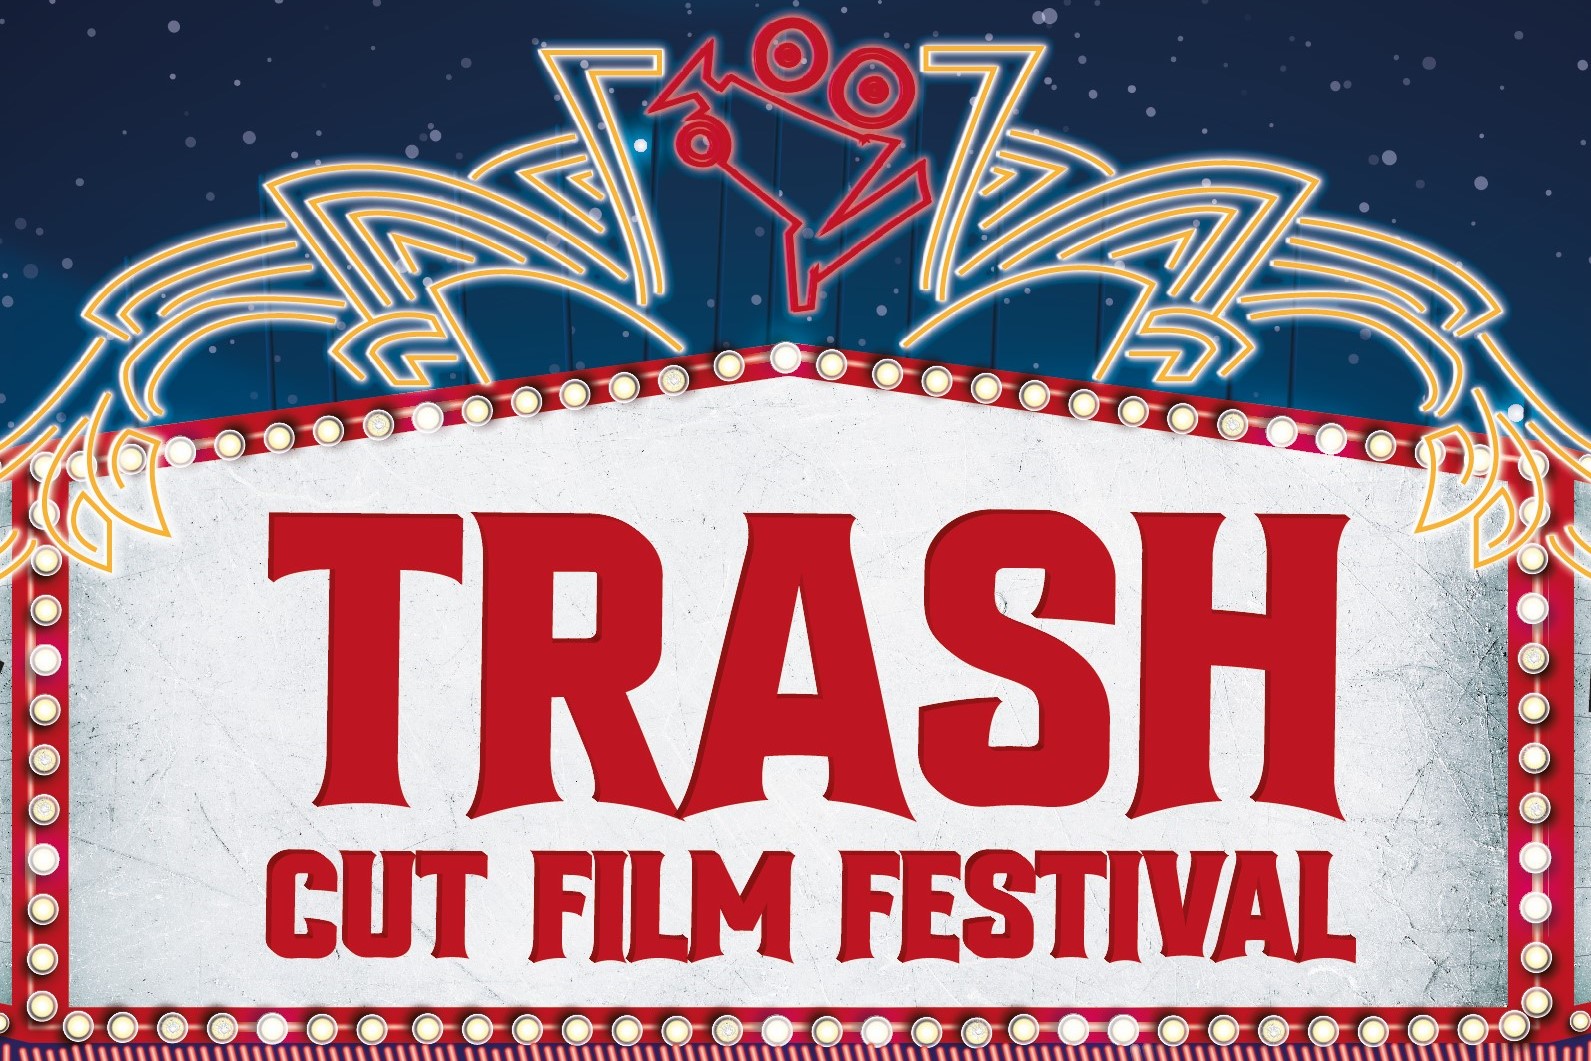 Llega una nueva edicin del Trash Cut Film Festival